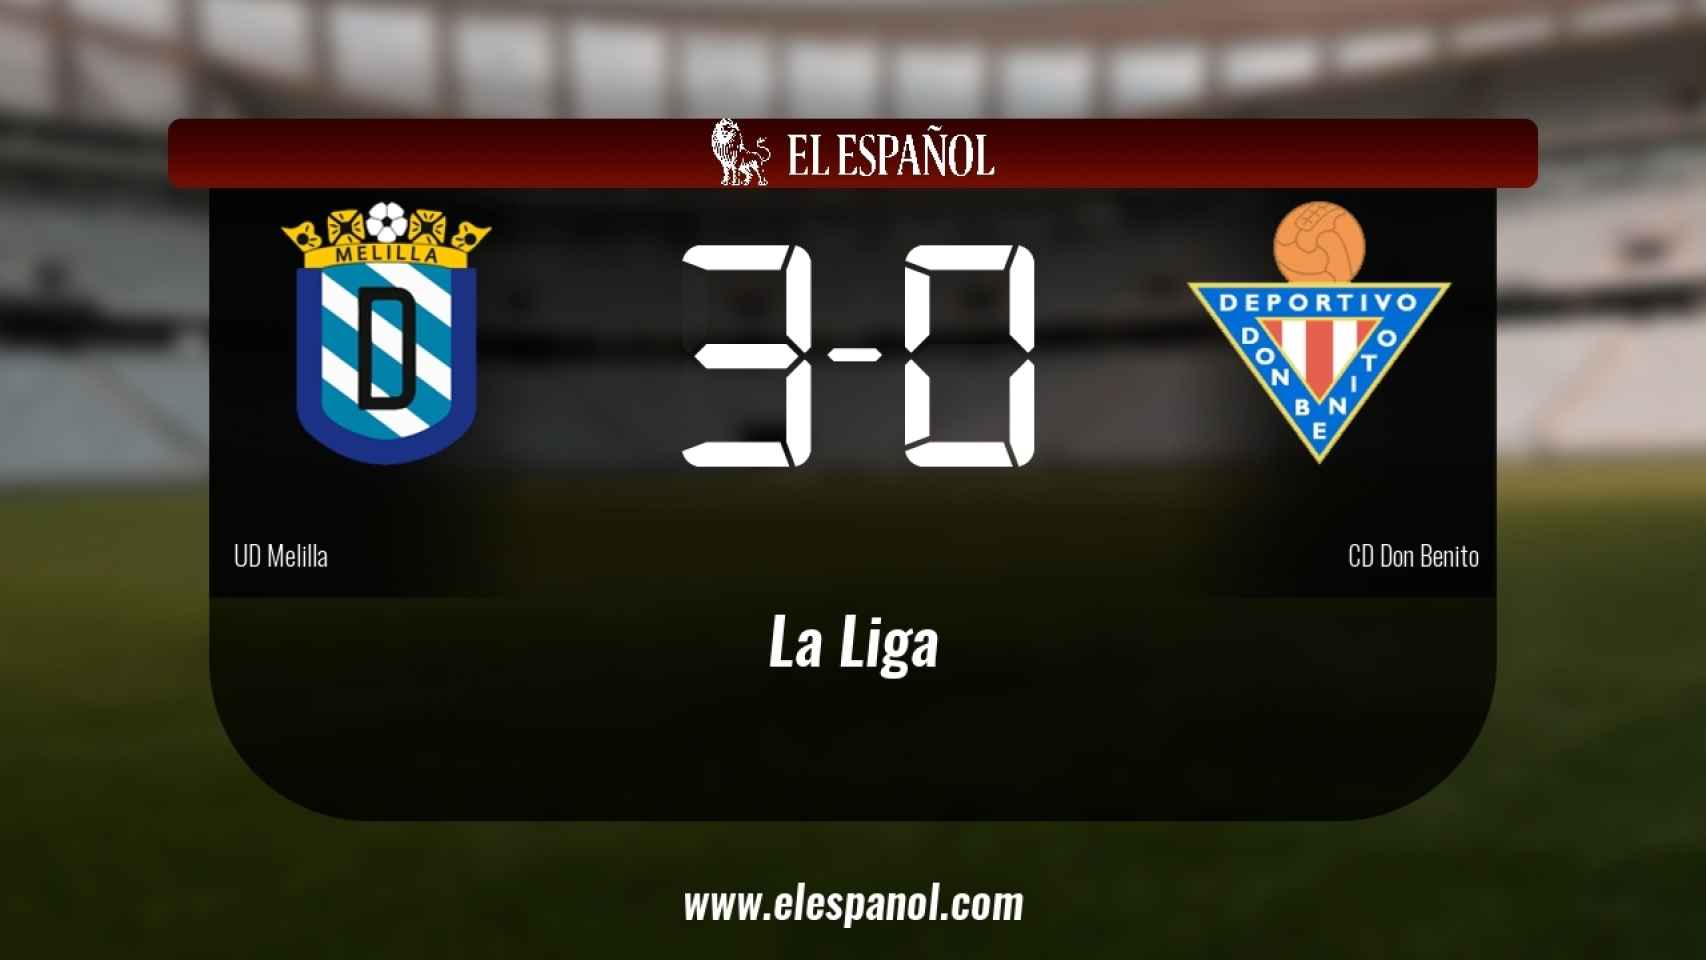 Victoria 3-0 del Melilla frente al Don Benito